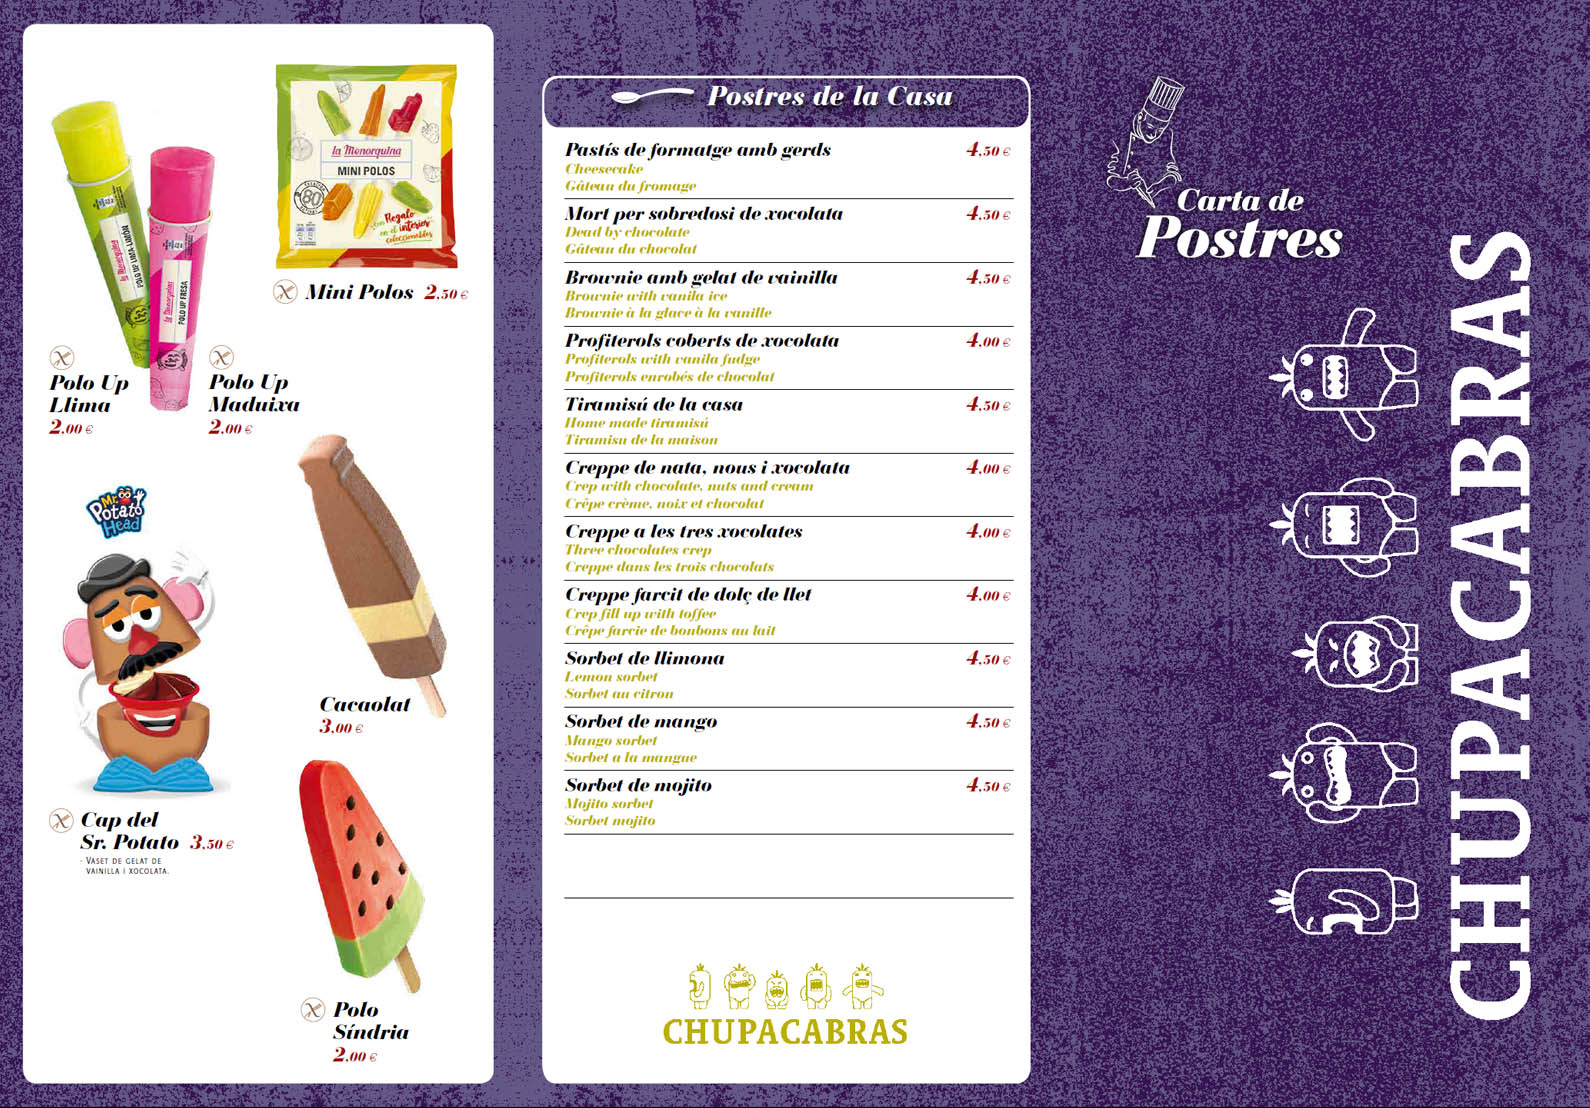 Postres del restaurante mexicano Chupacabras en Sant antoni en la Costa brava